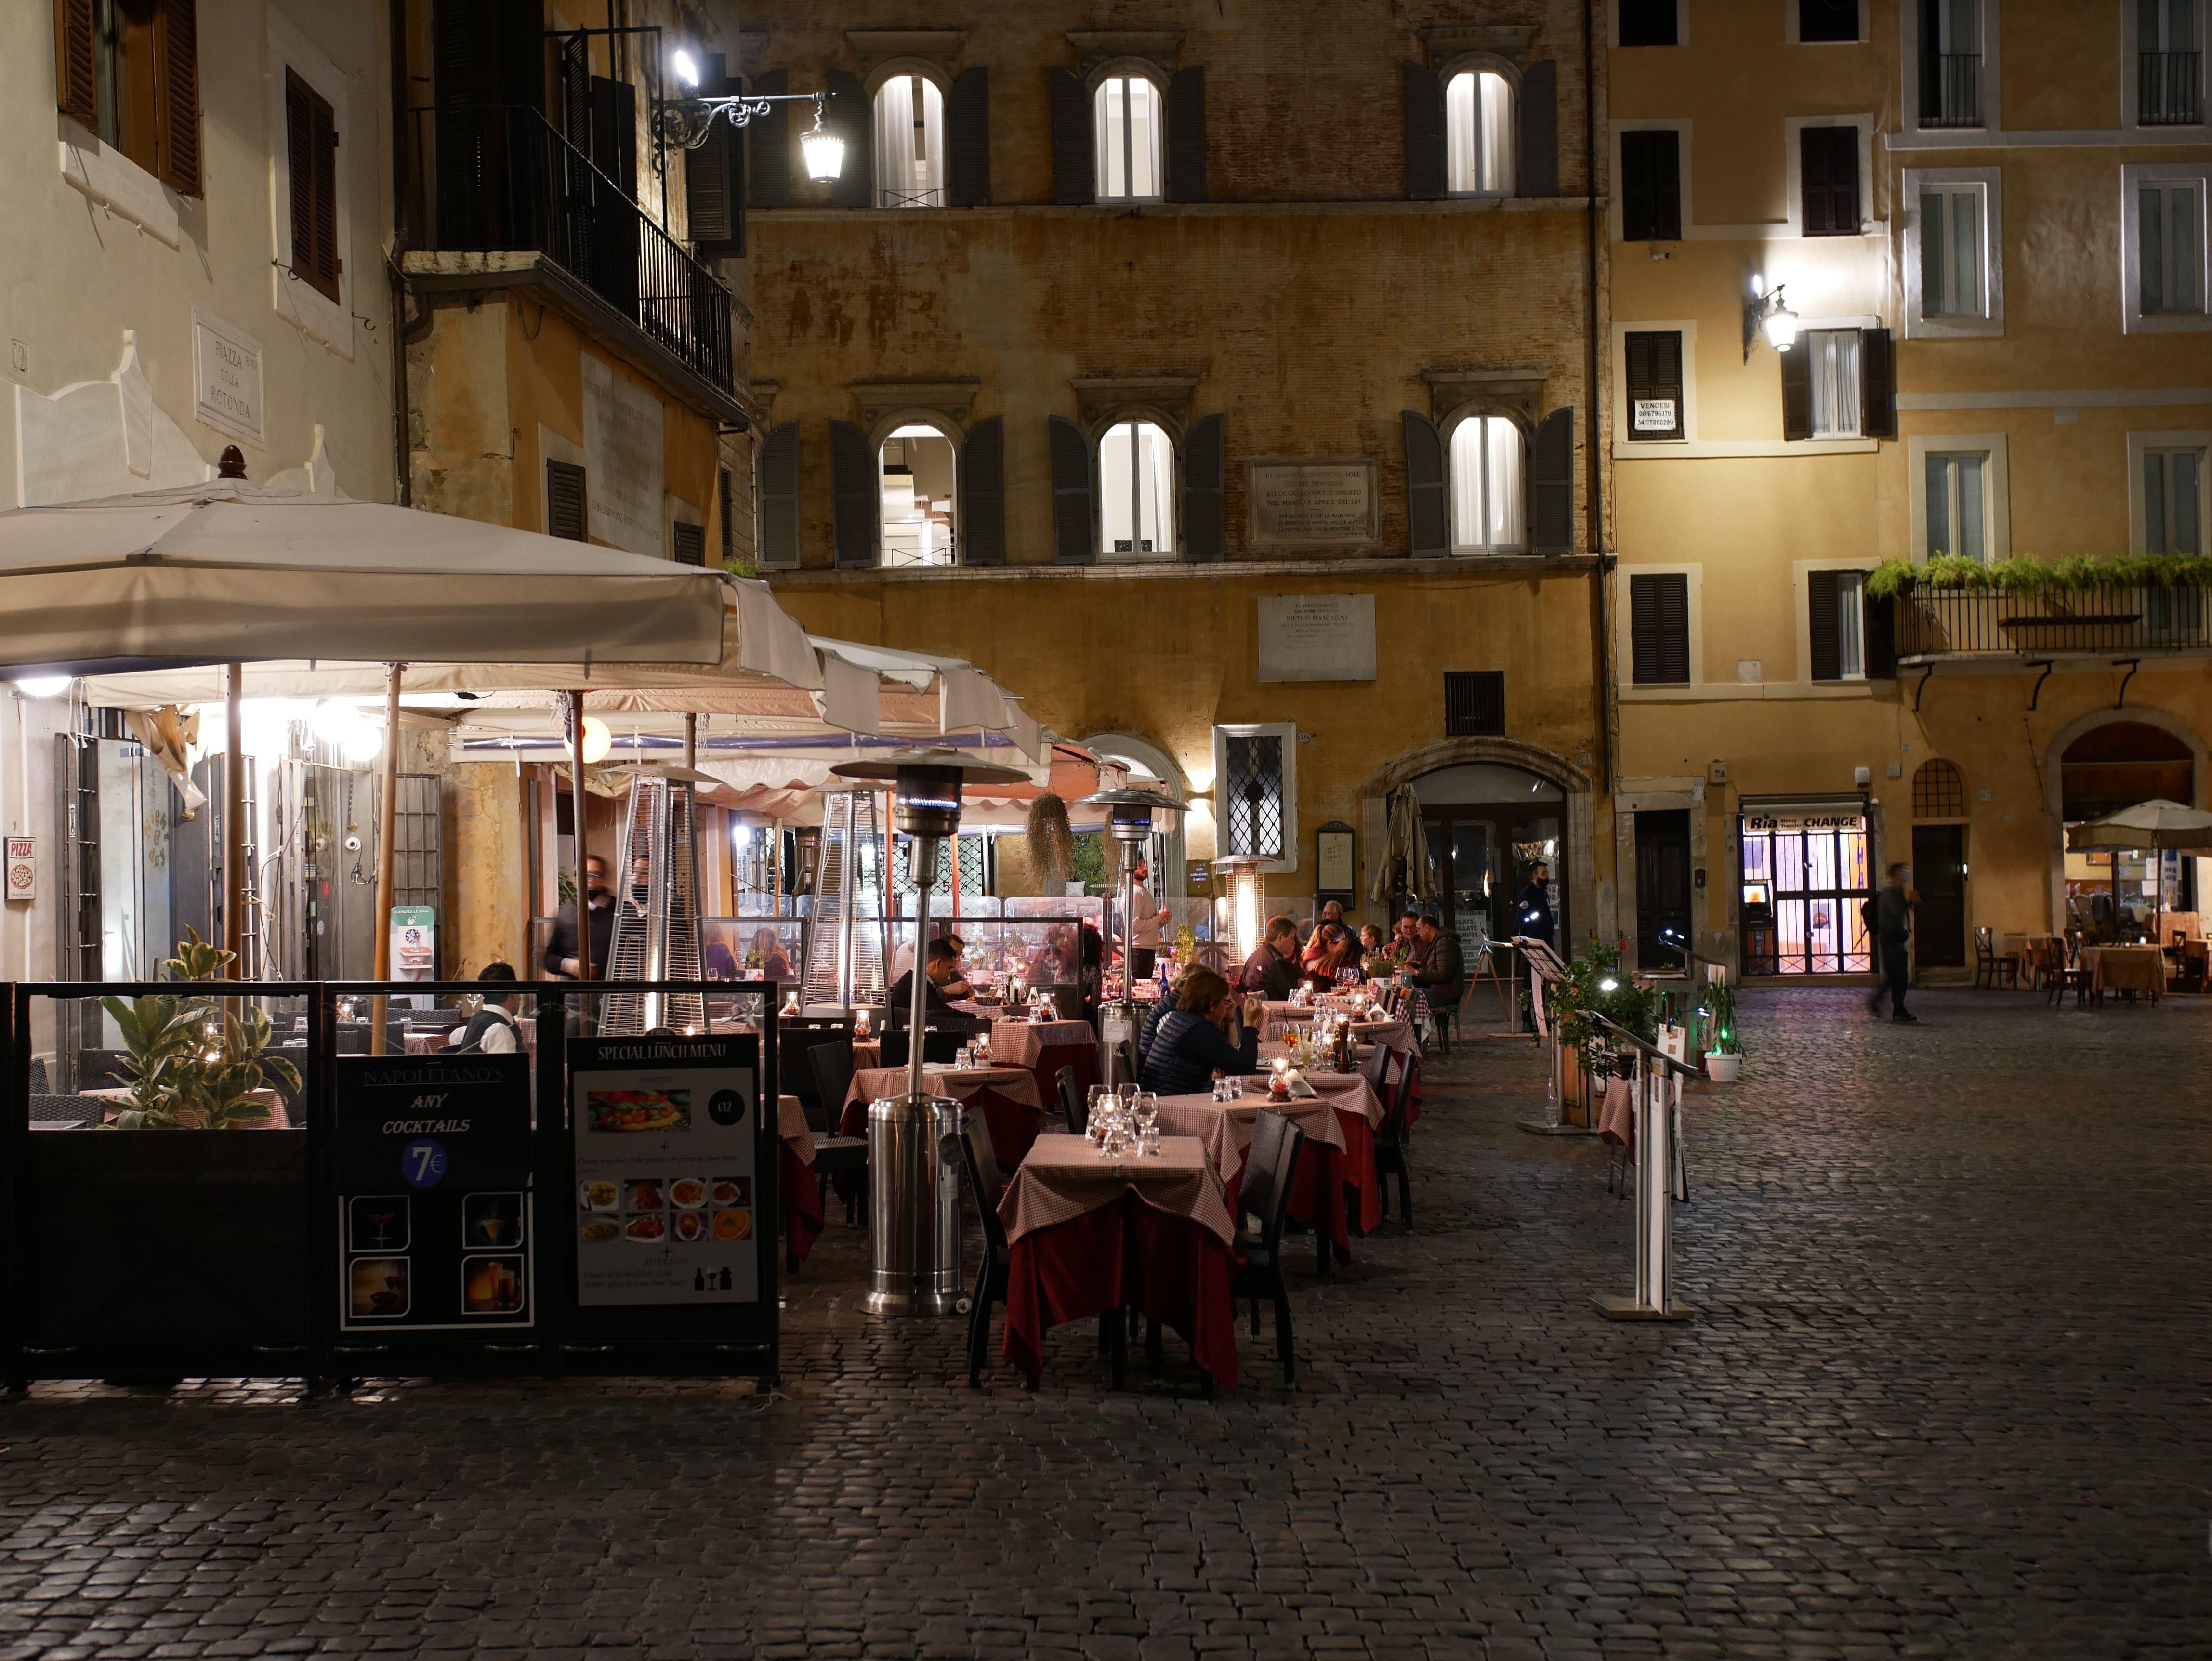 Étterem terasza este egy vársoi téren vendégekkel